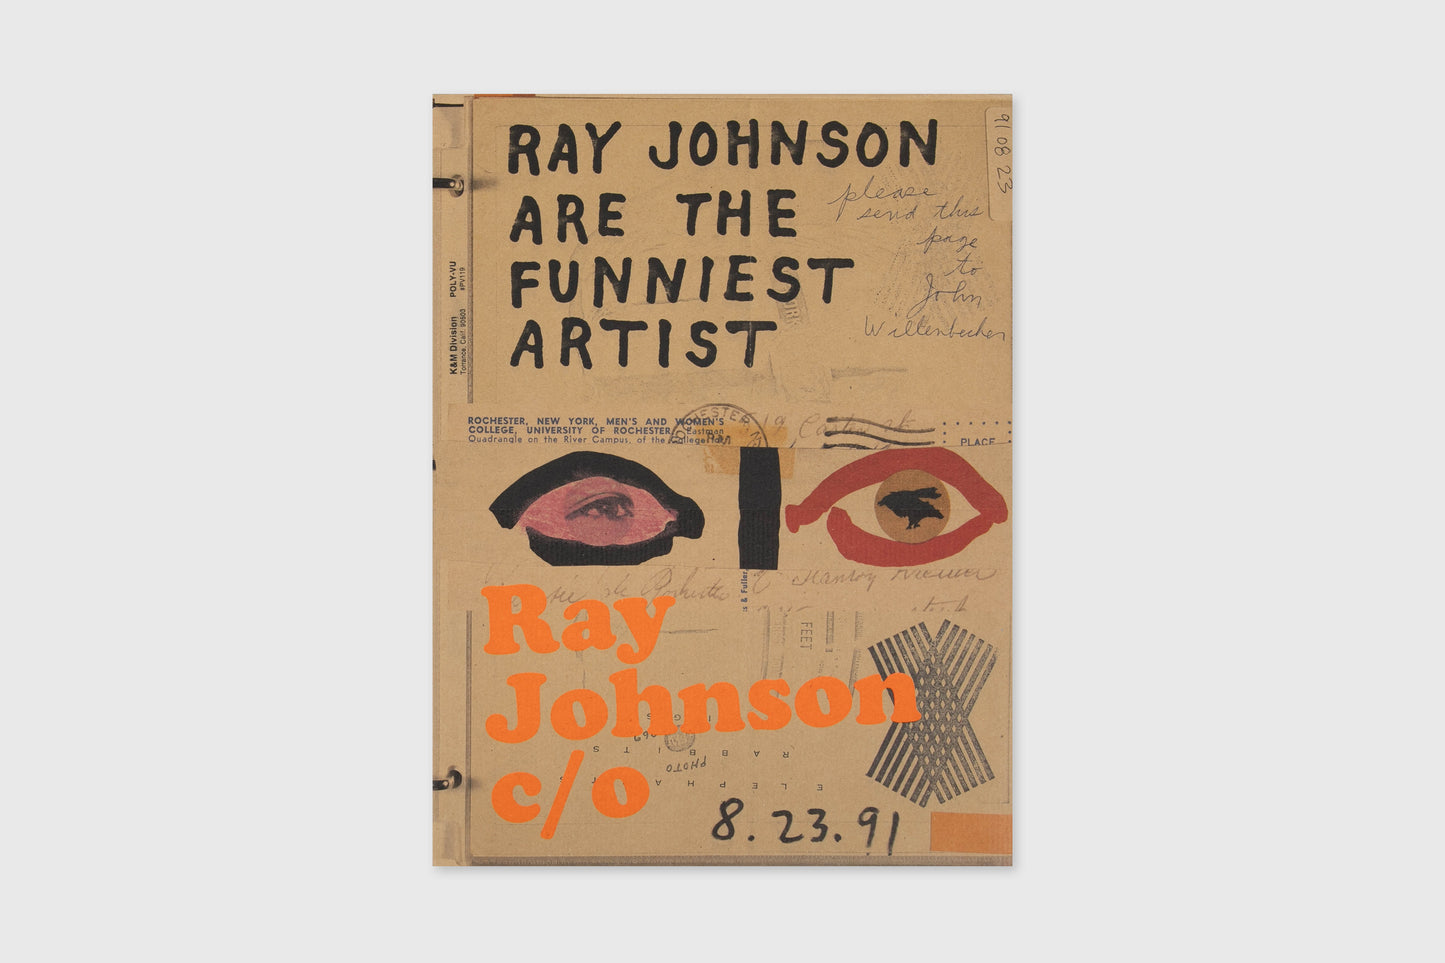 Ray Johnson c/o